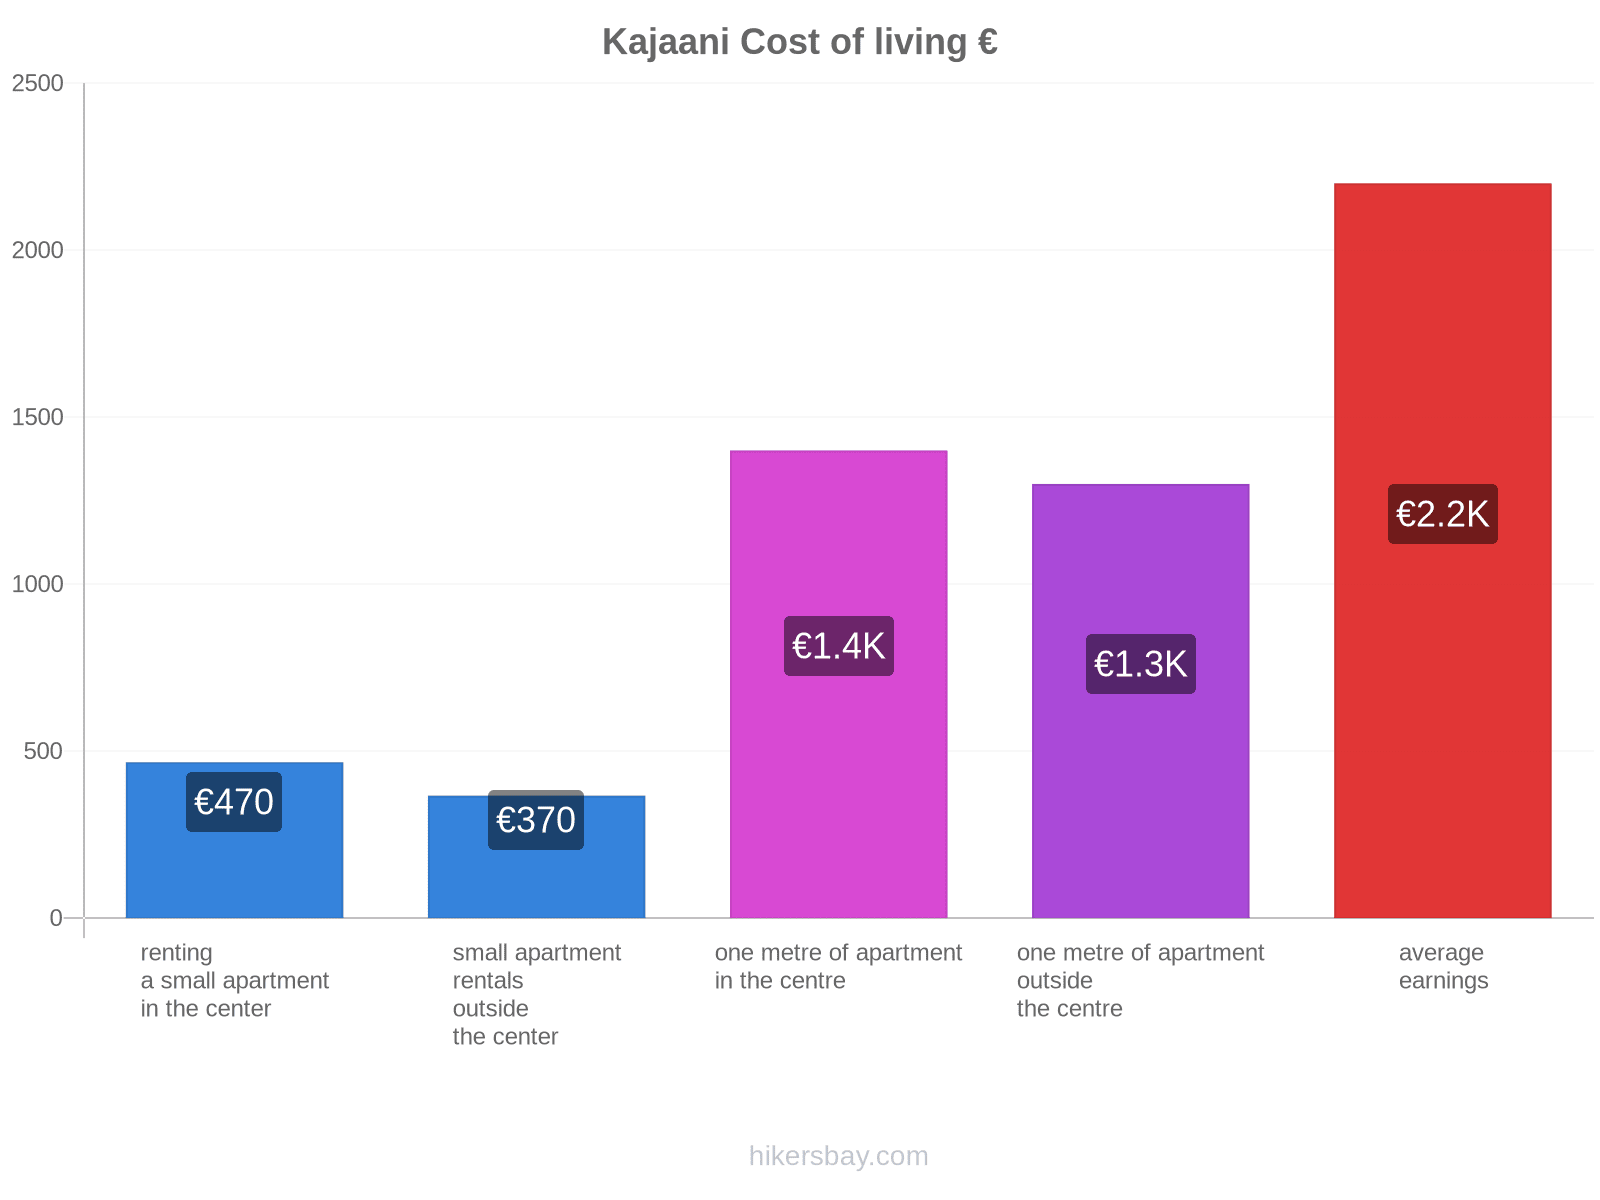 Kajaani cost of living hikersbay.com